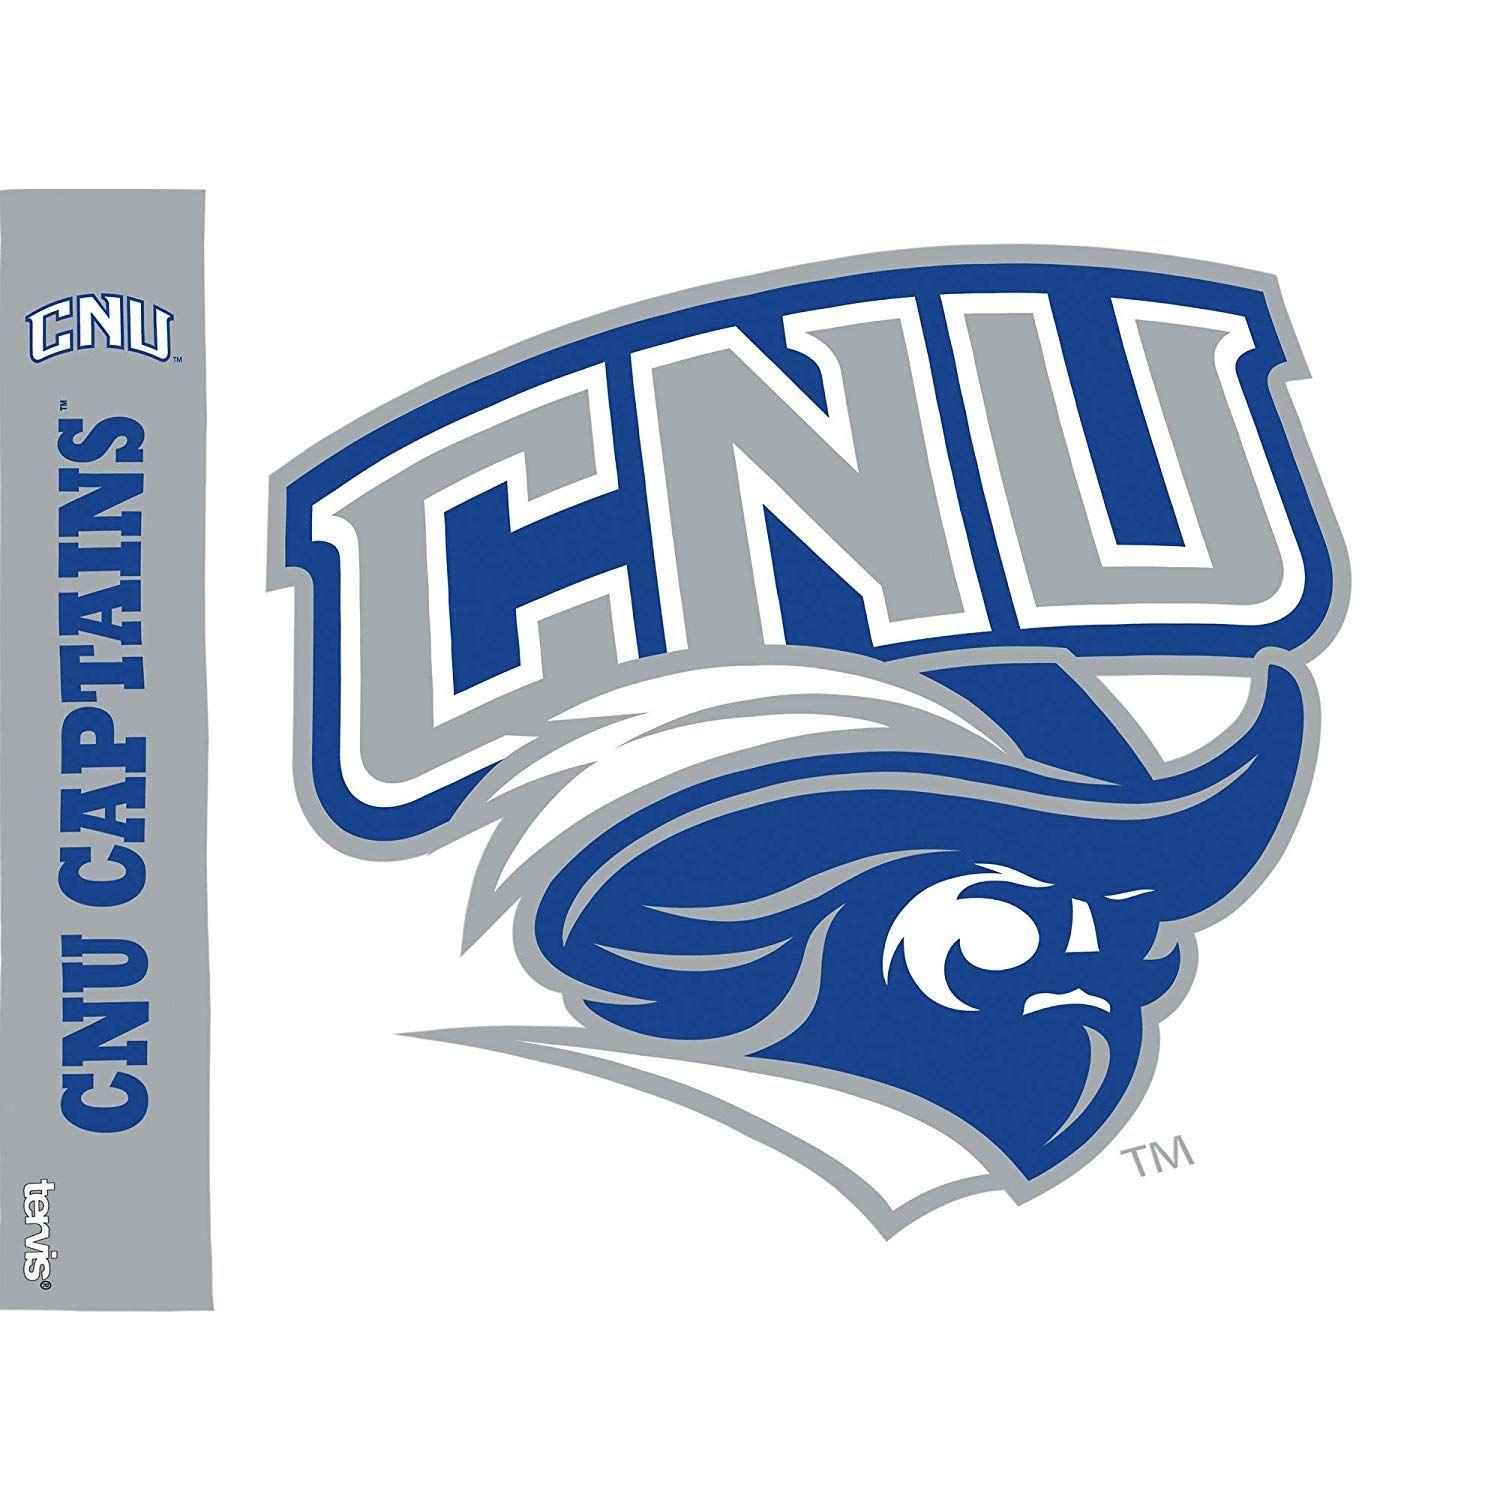 CNU Logo - Cnu Logo - 9000+ Logo Design Ideas